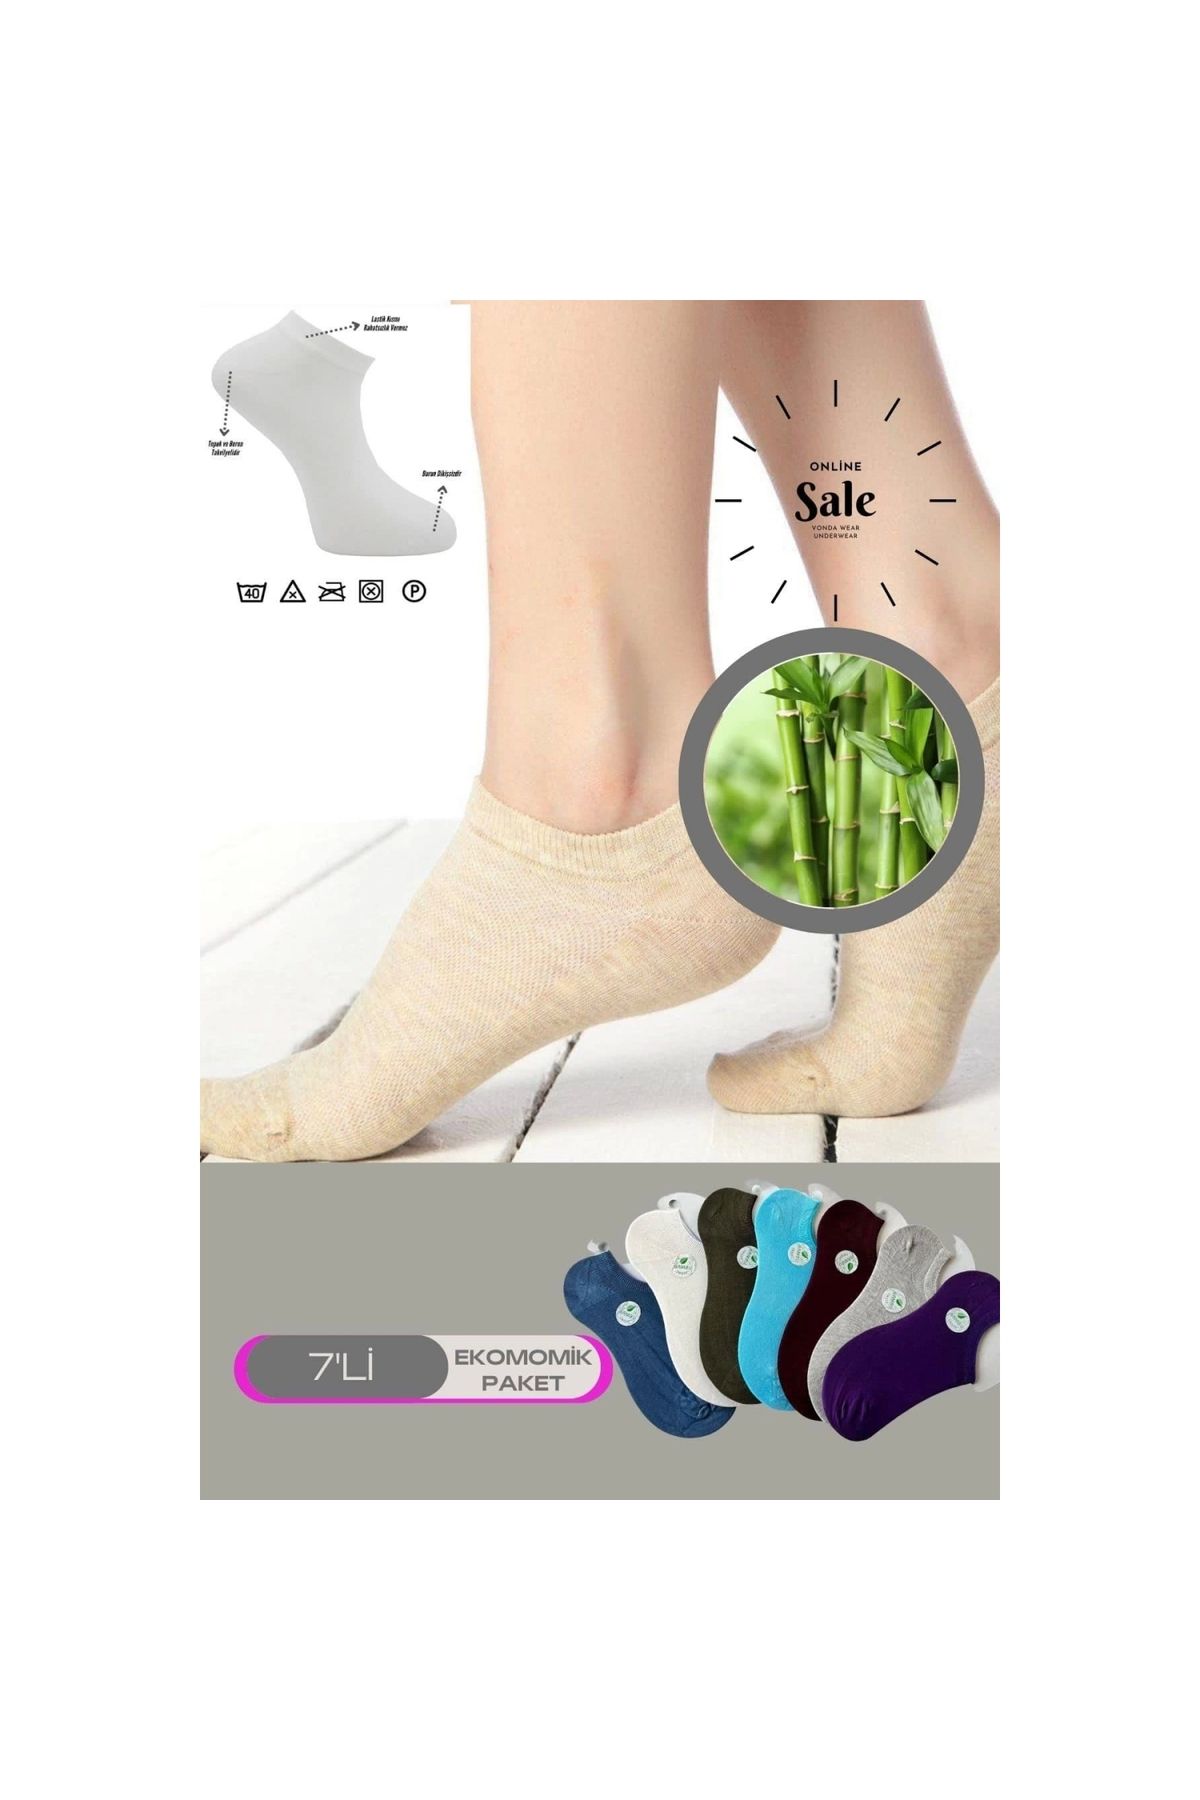 Narnuga Modlive Çok Rekli 7 Li Bambu Topuk Burun Dikişsiz Takviyeli Kadın Sneakers Çorap 1005-çokrekli-7li